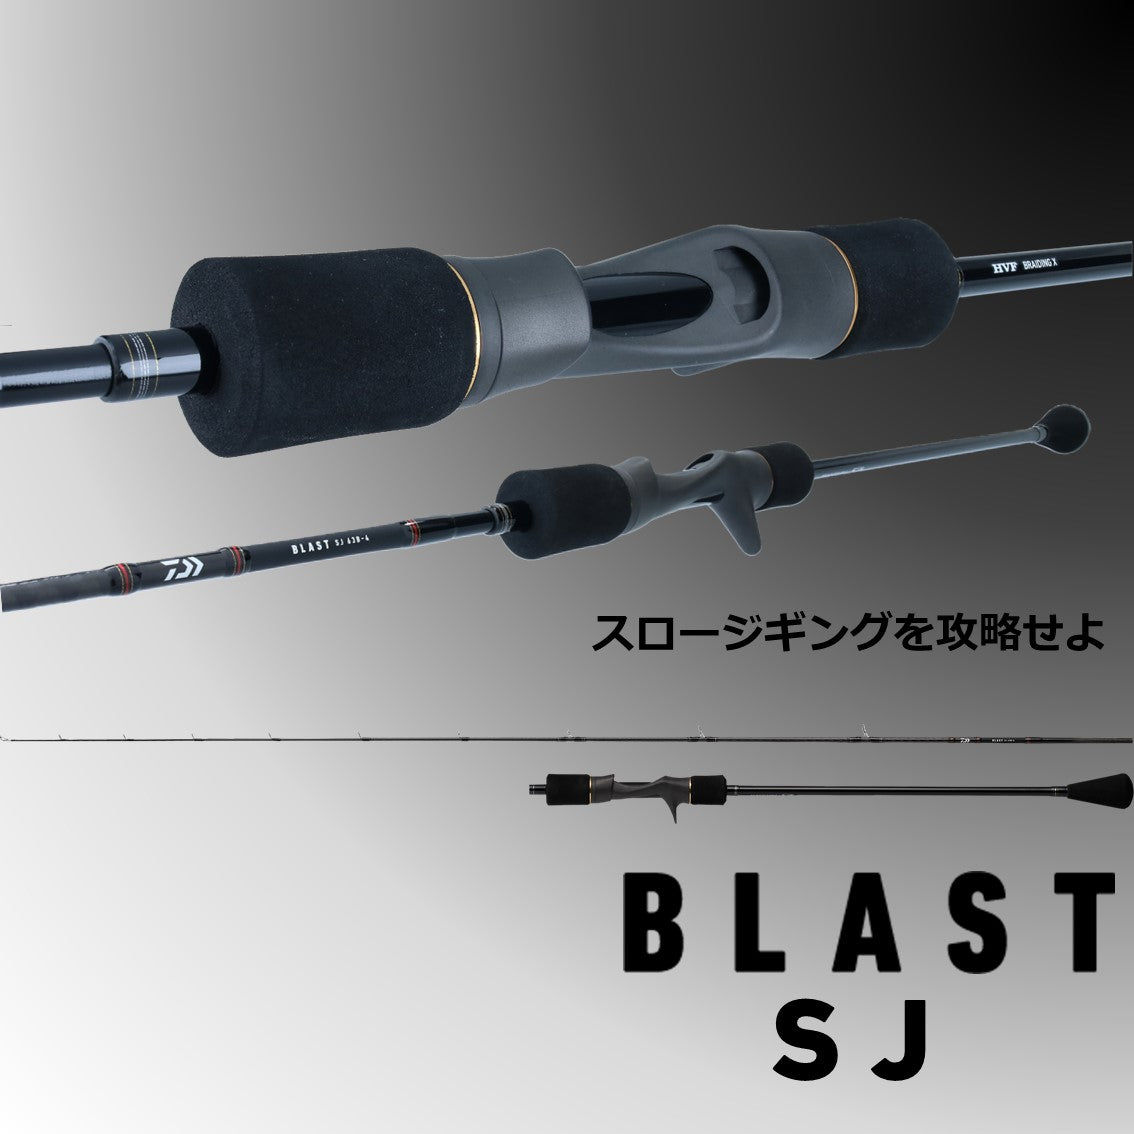 Daiwa Blast SJ (Slow Jigging) Rod